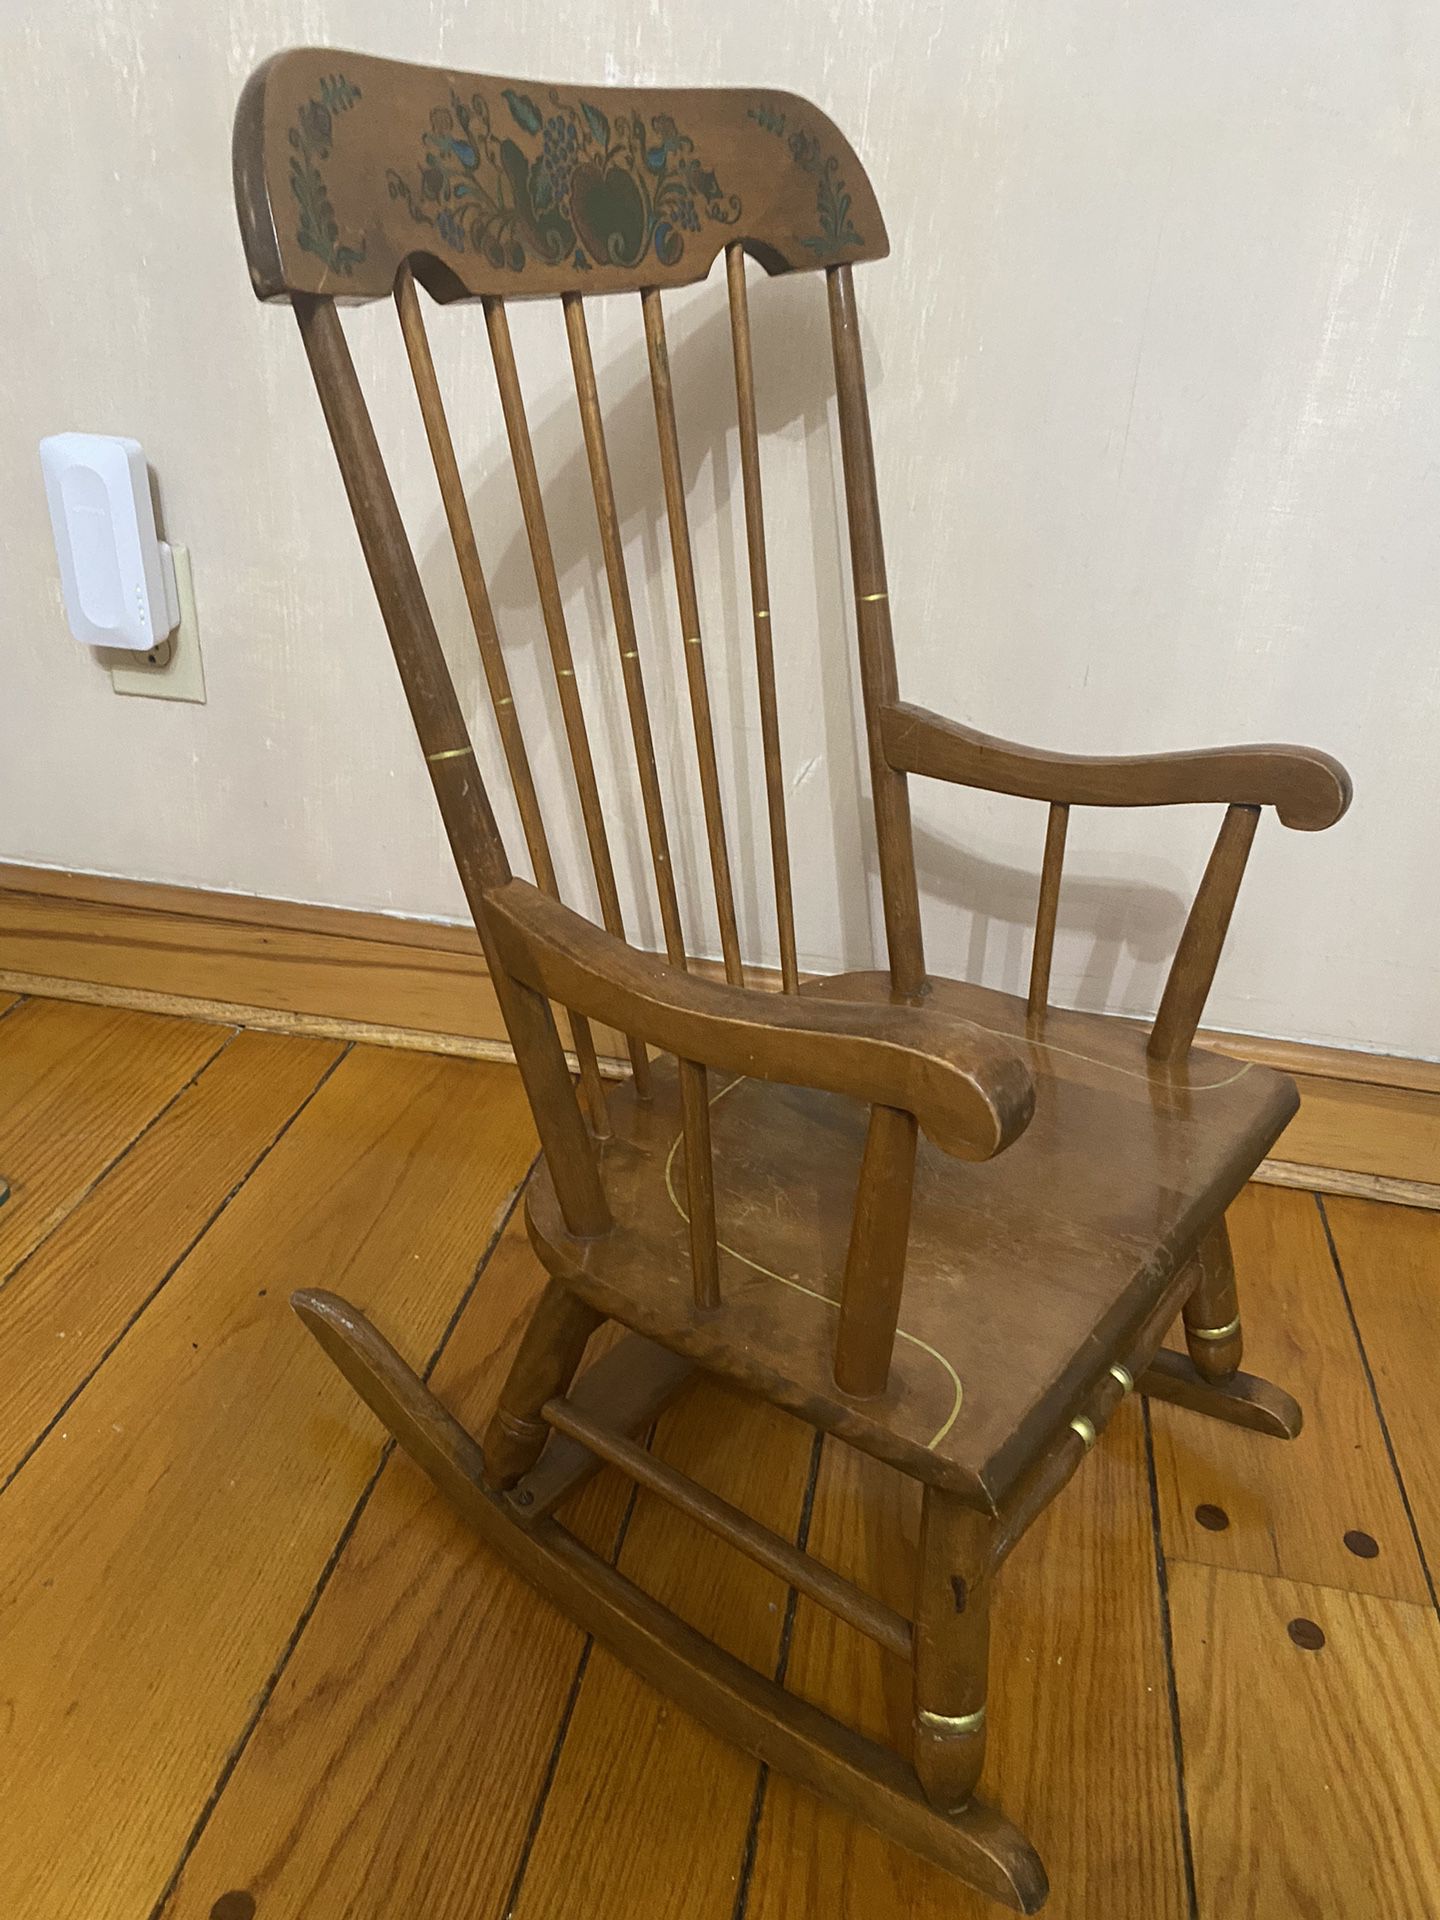 Antique Rocking Chair For Children